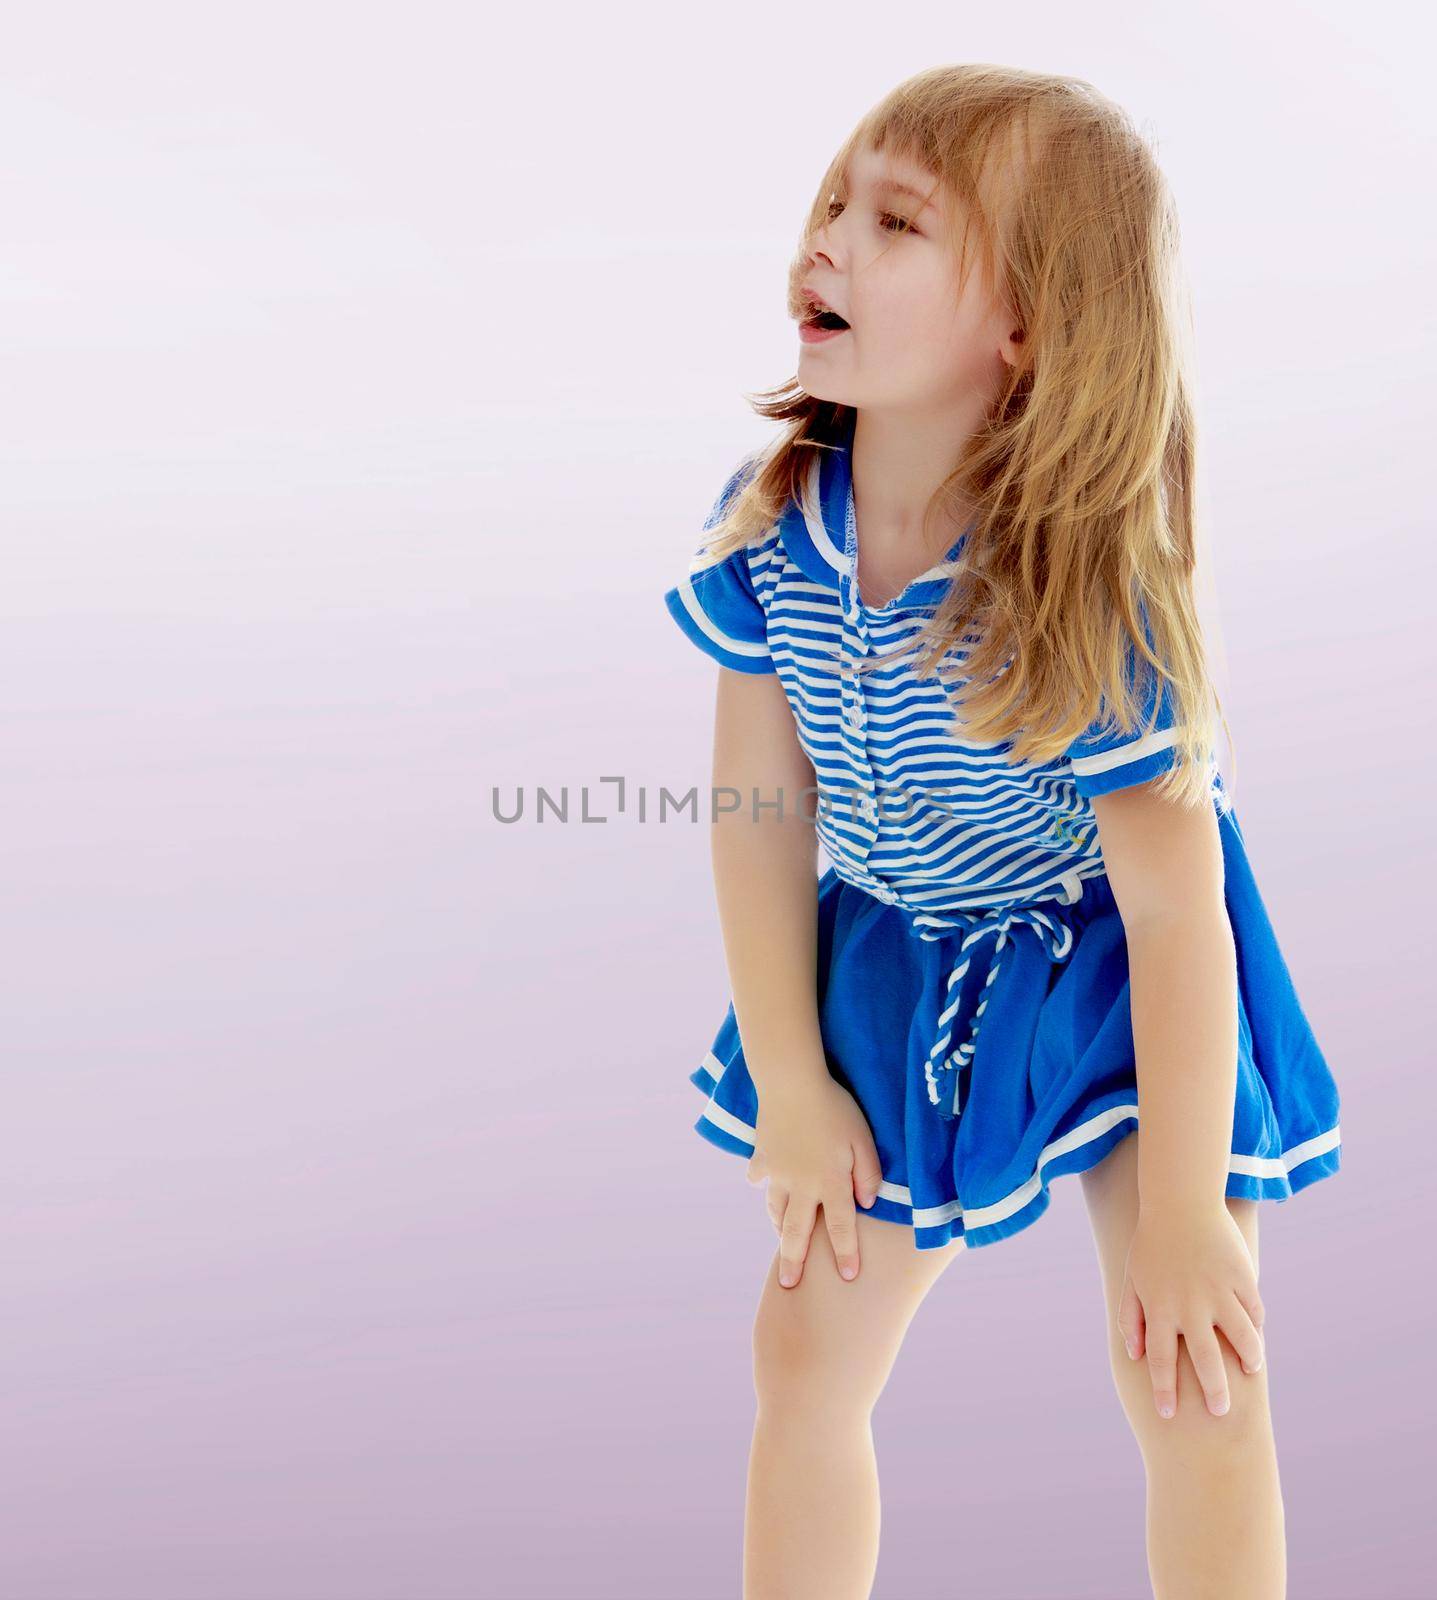 Unkempt little girl by kolesnikov_studio